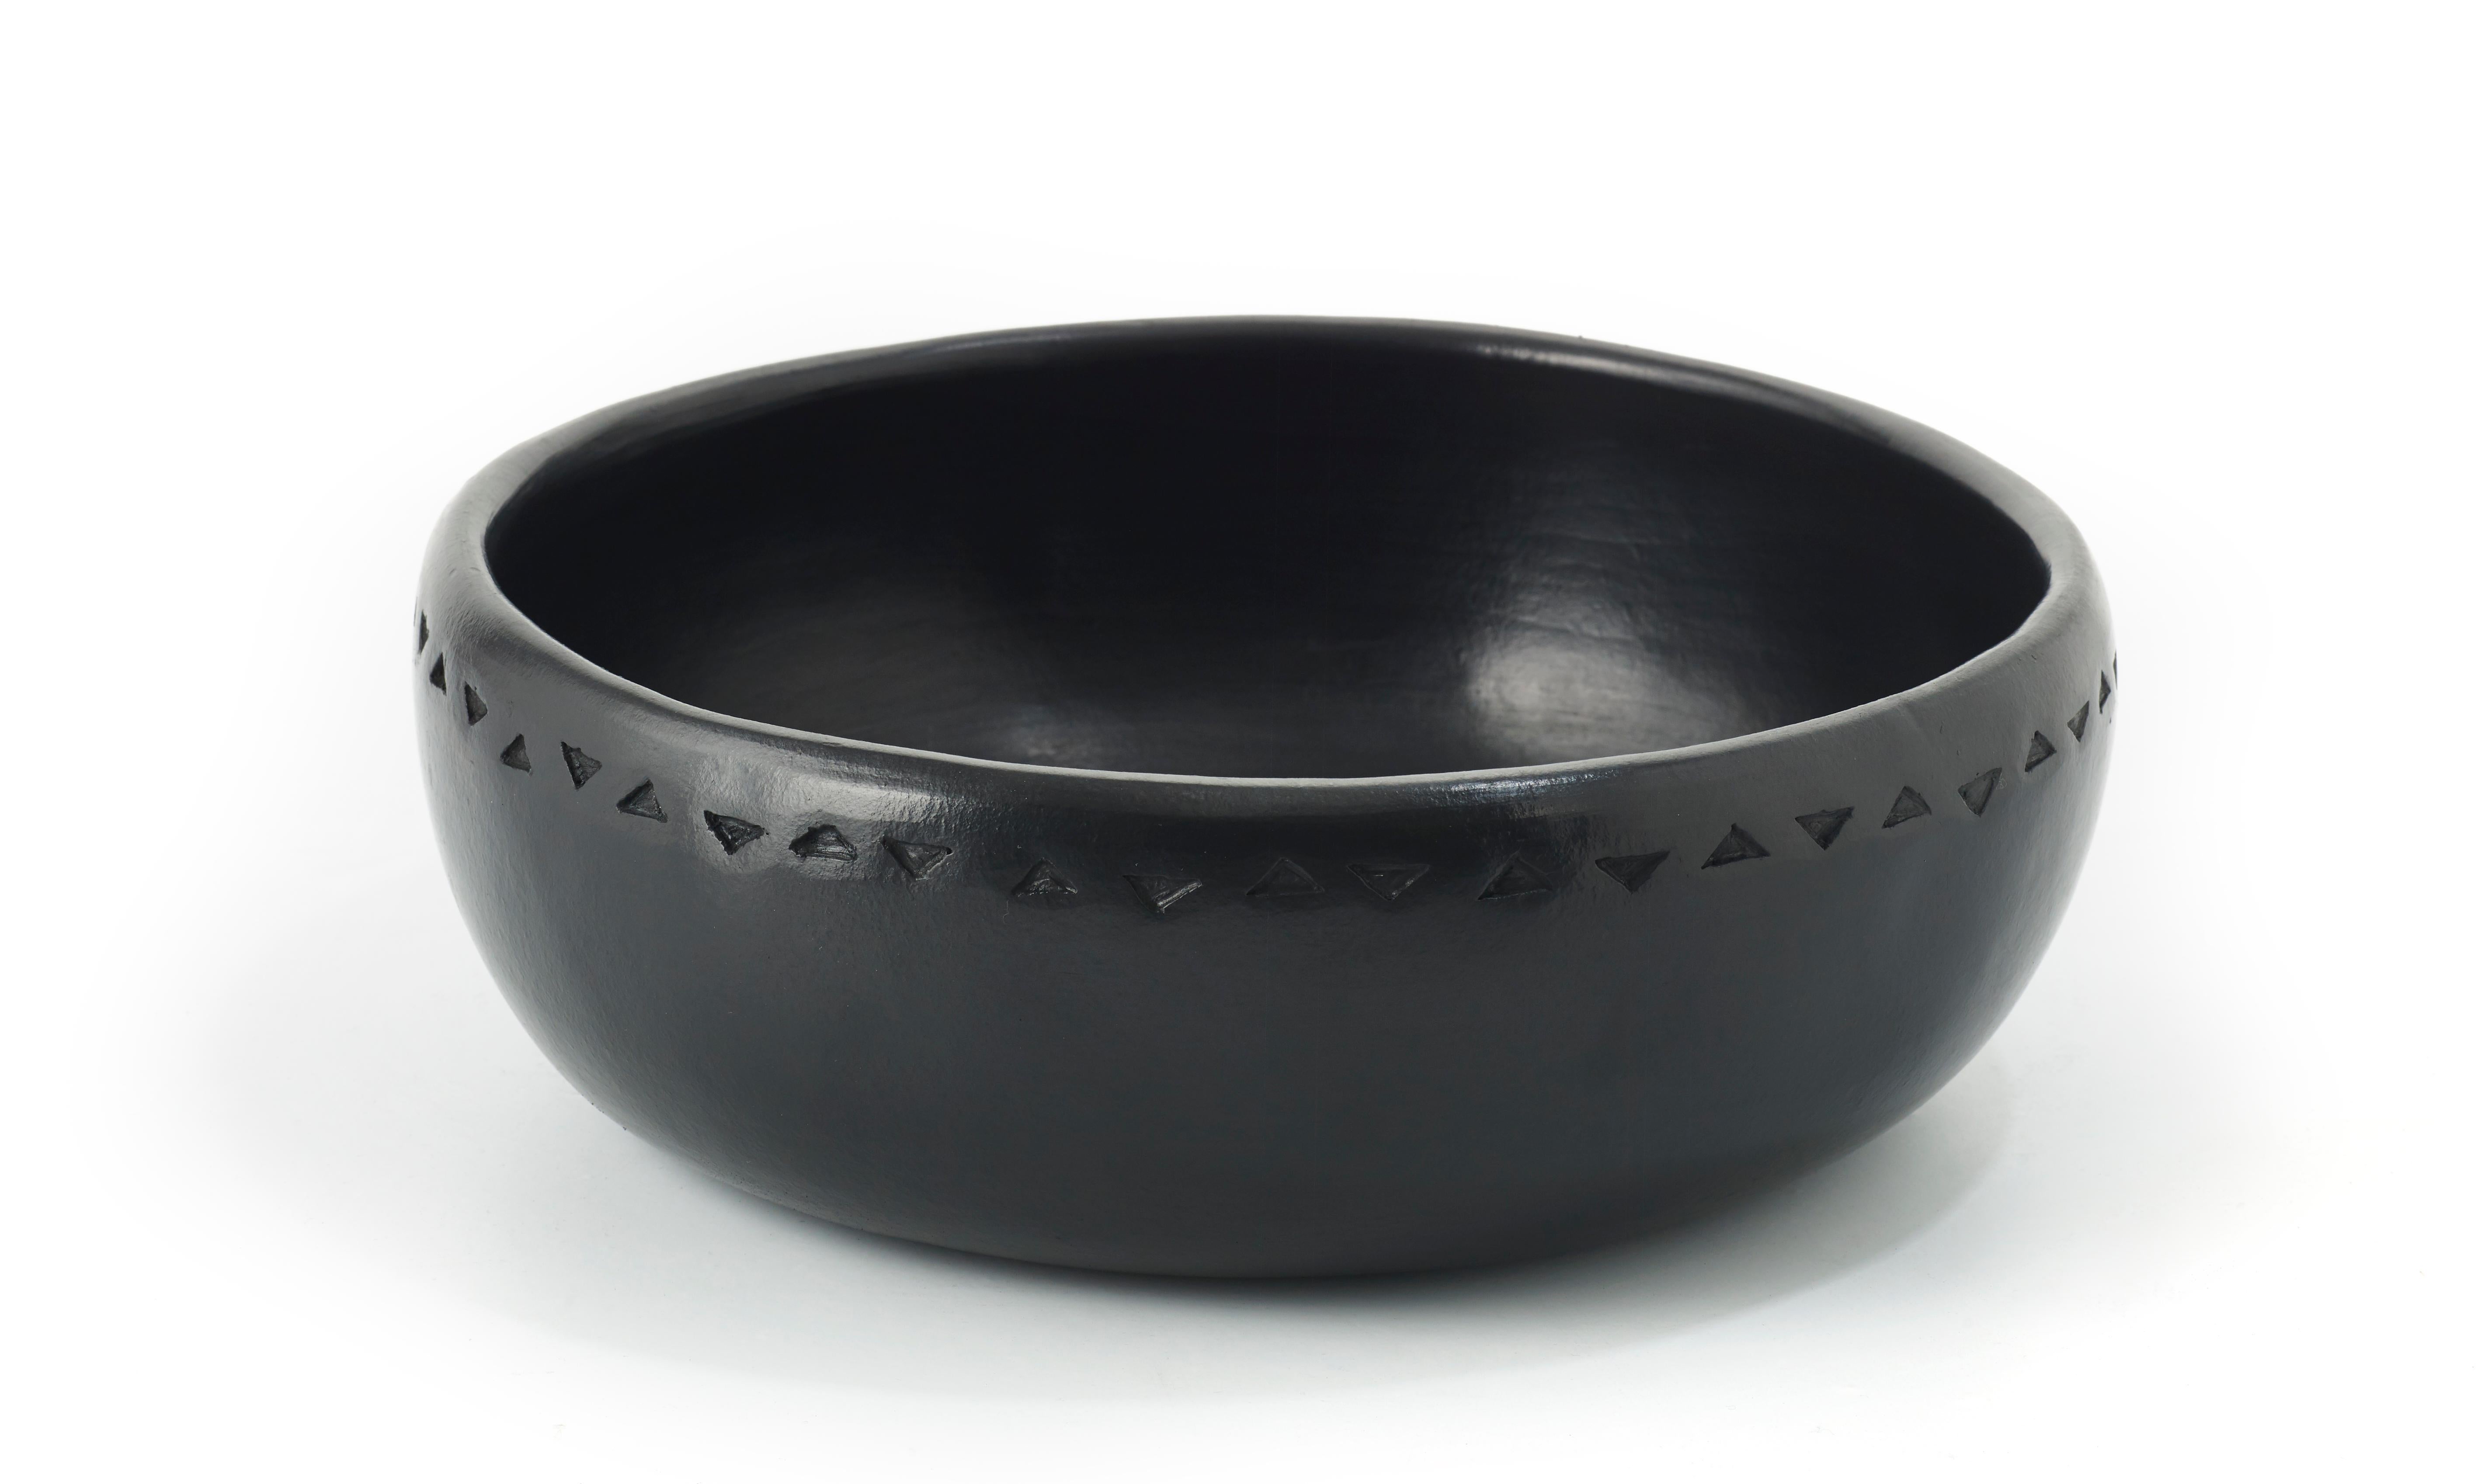 Mittlere Schale Barro dining von Sebastian Herkner
MATERIAL: hitzebeständige schwarze Keramik. 
Technik: glasiert. Im Ofen gegart und mit Halbedelsteinen poliert. 
Abmessungen: Durchmesser 31 cm x Höhe 11 cm 
Erhältlich in den Größen: Groß,